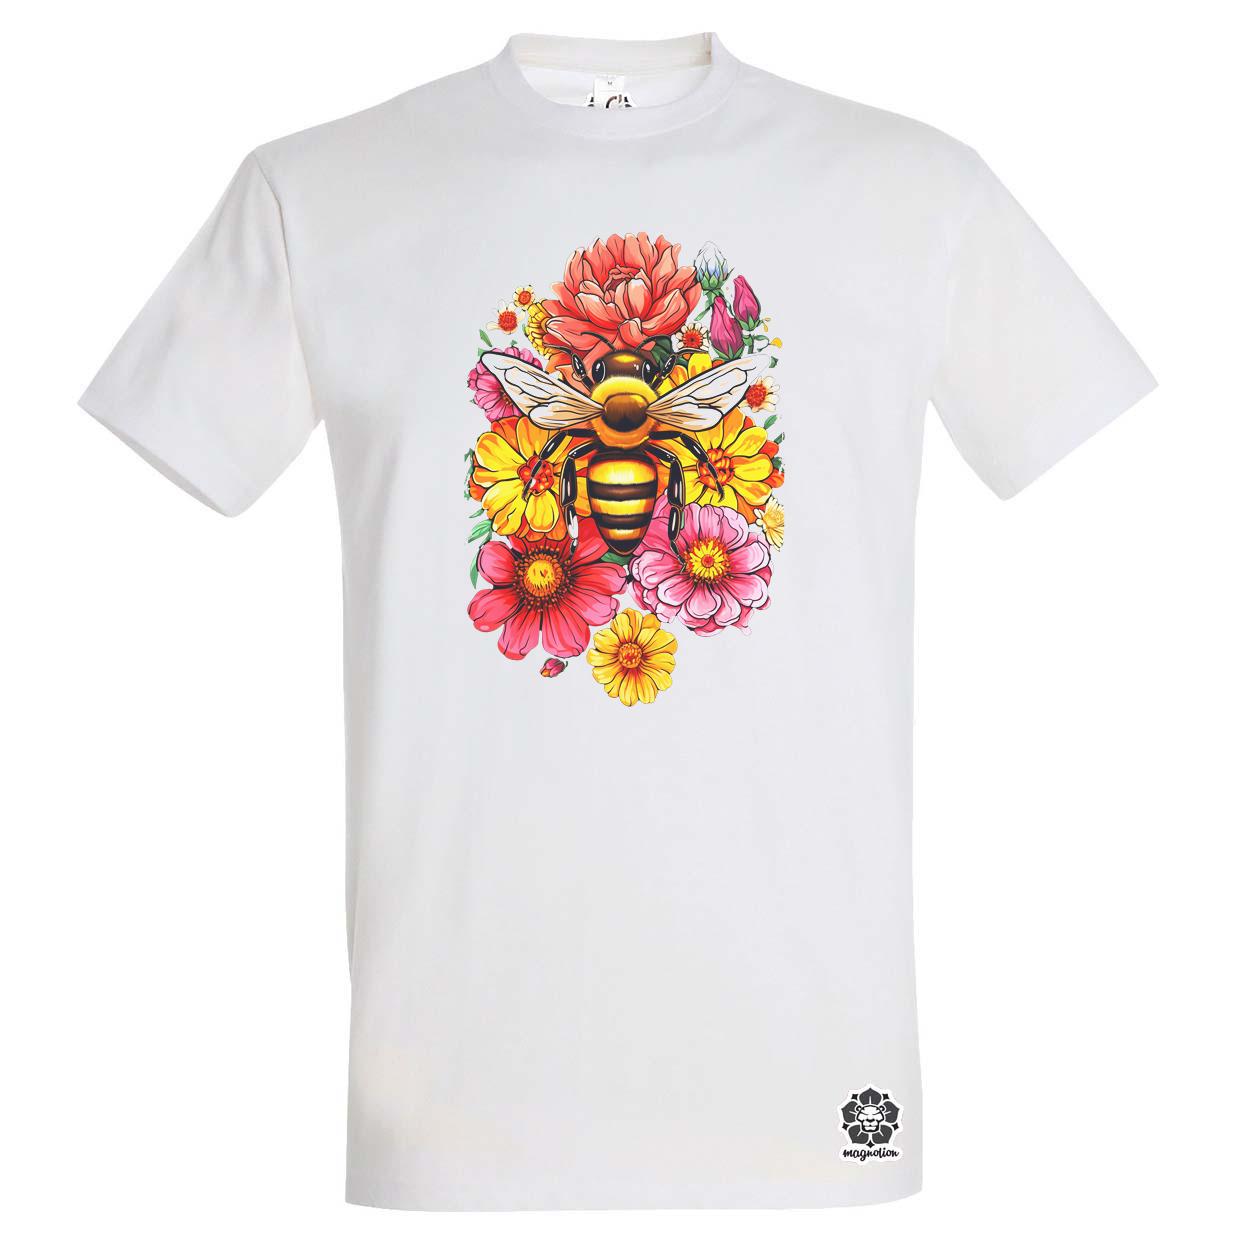 Méh és virágok v4